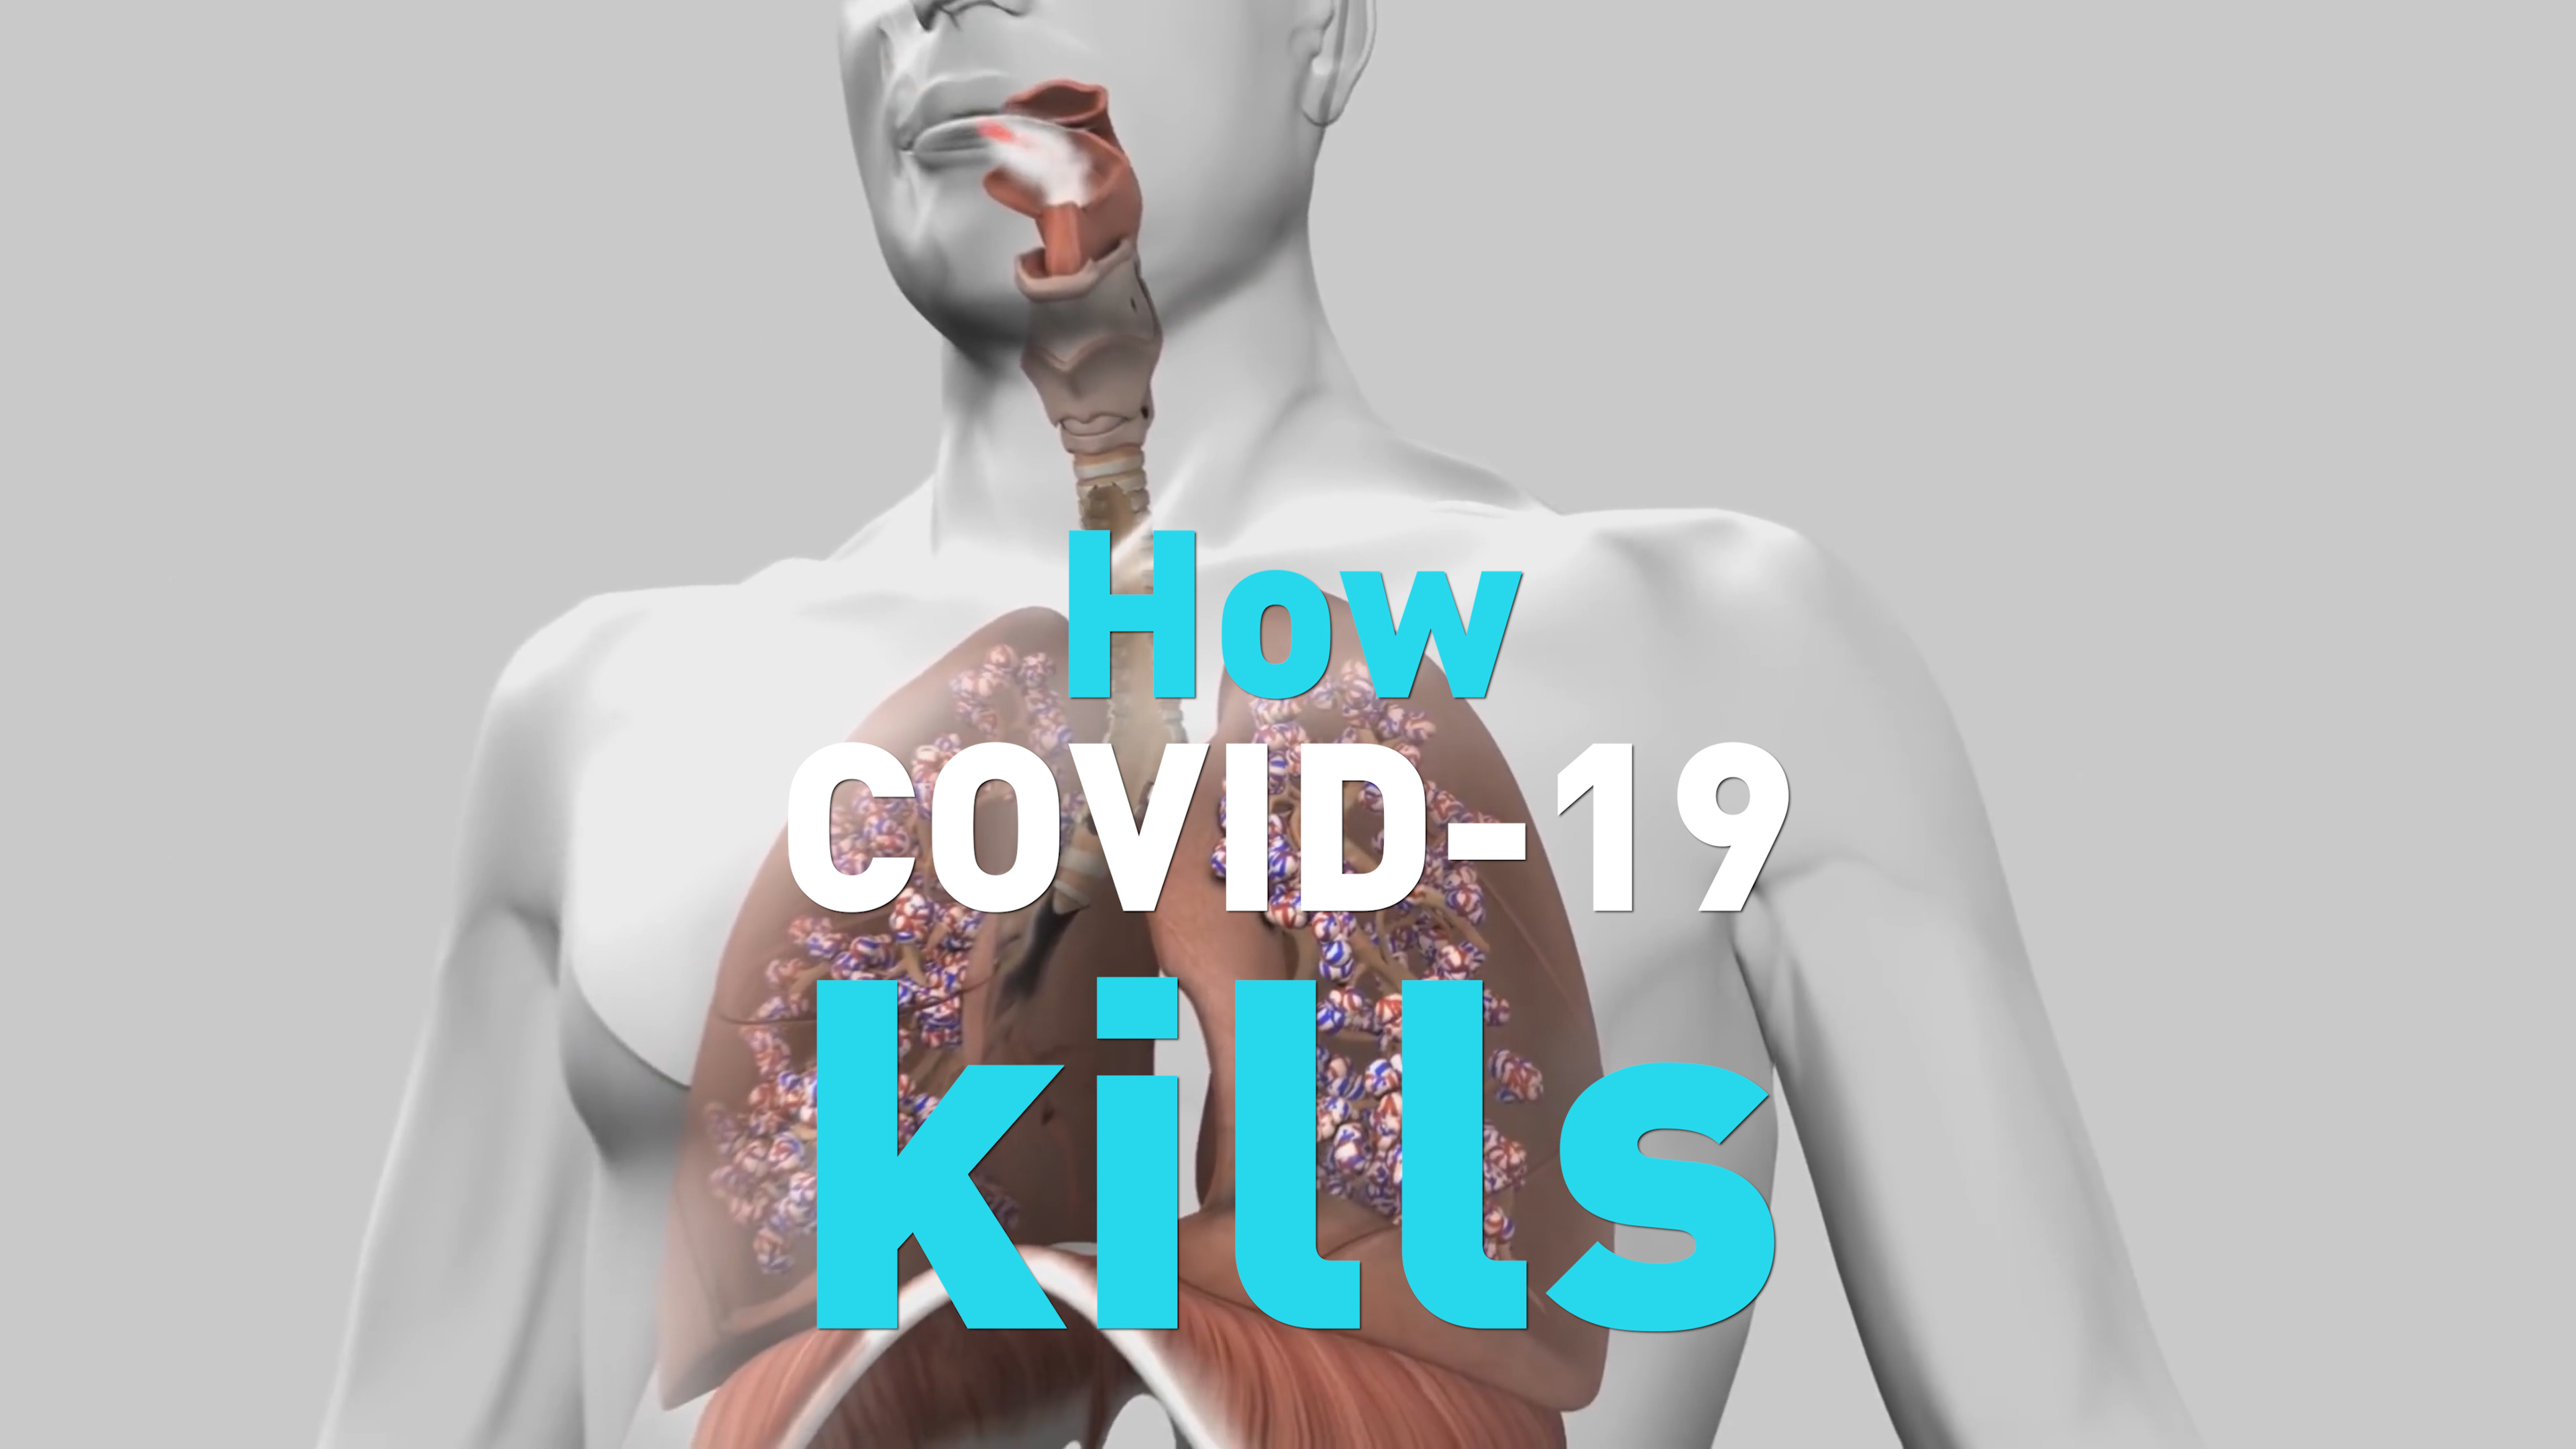 How exactly does COVID-19 kill people? - CGTN